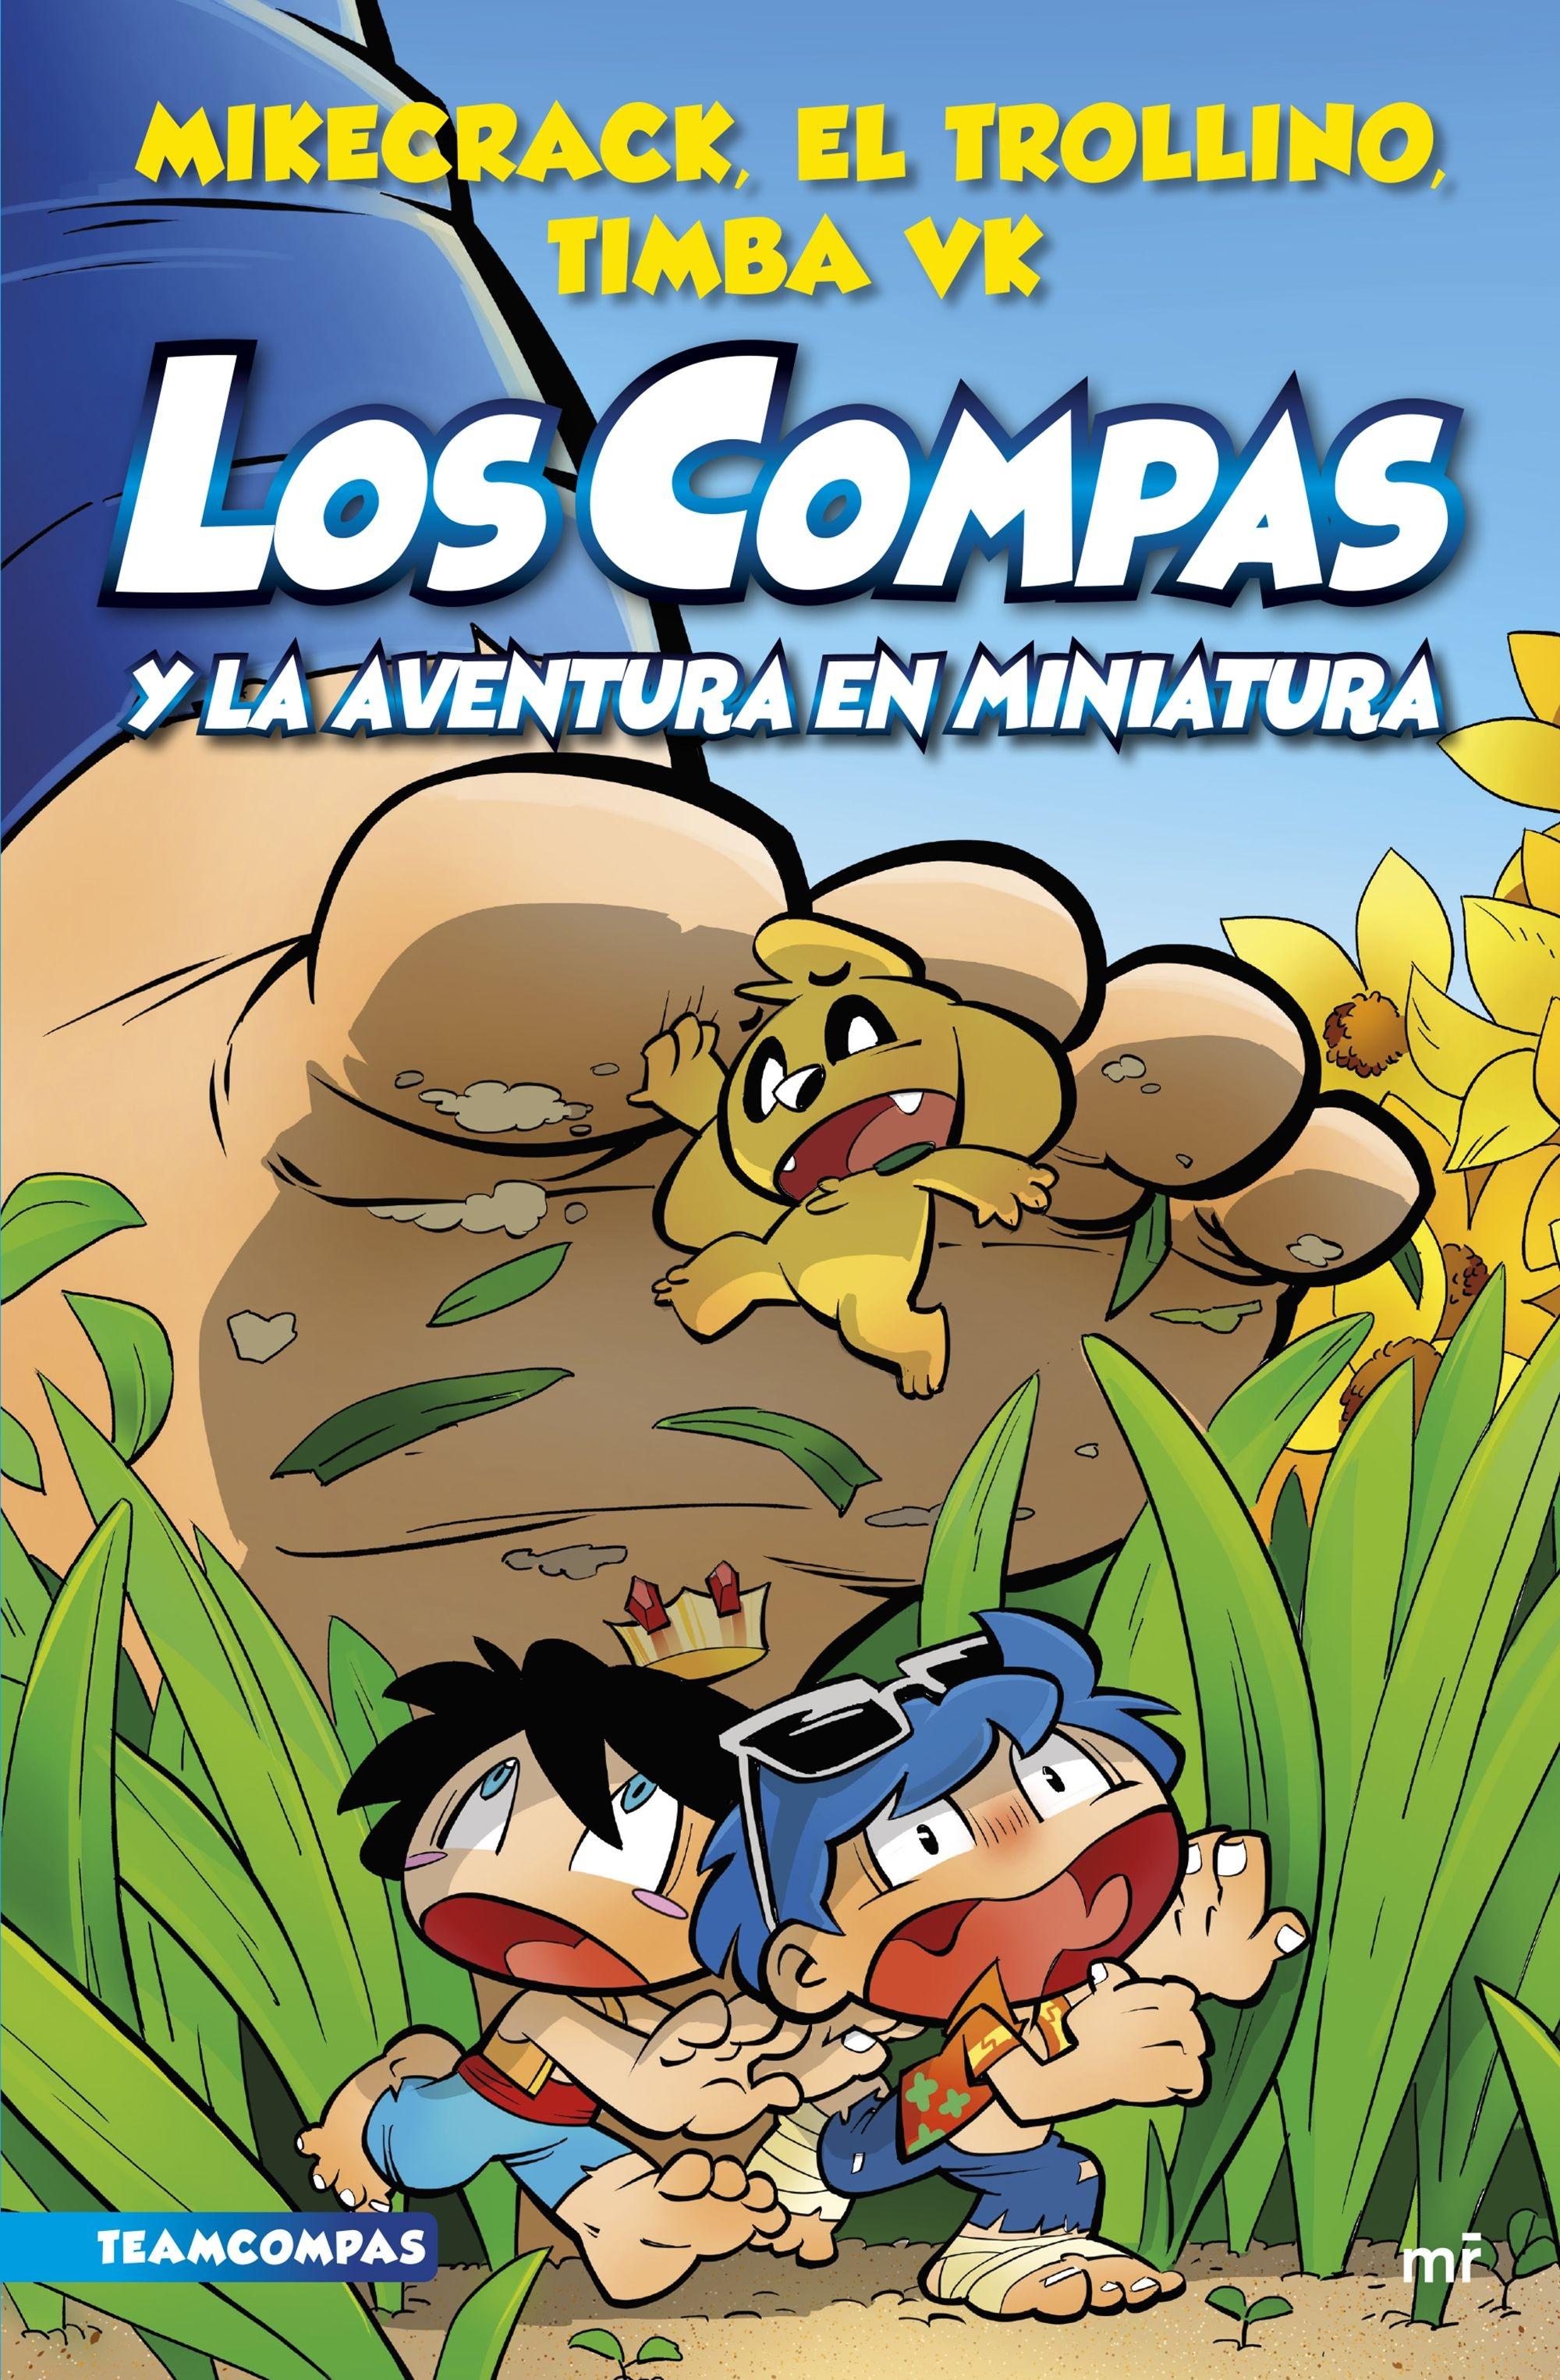 Los Compas 8 "Los compas y la aventura en miniatura ". 